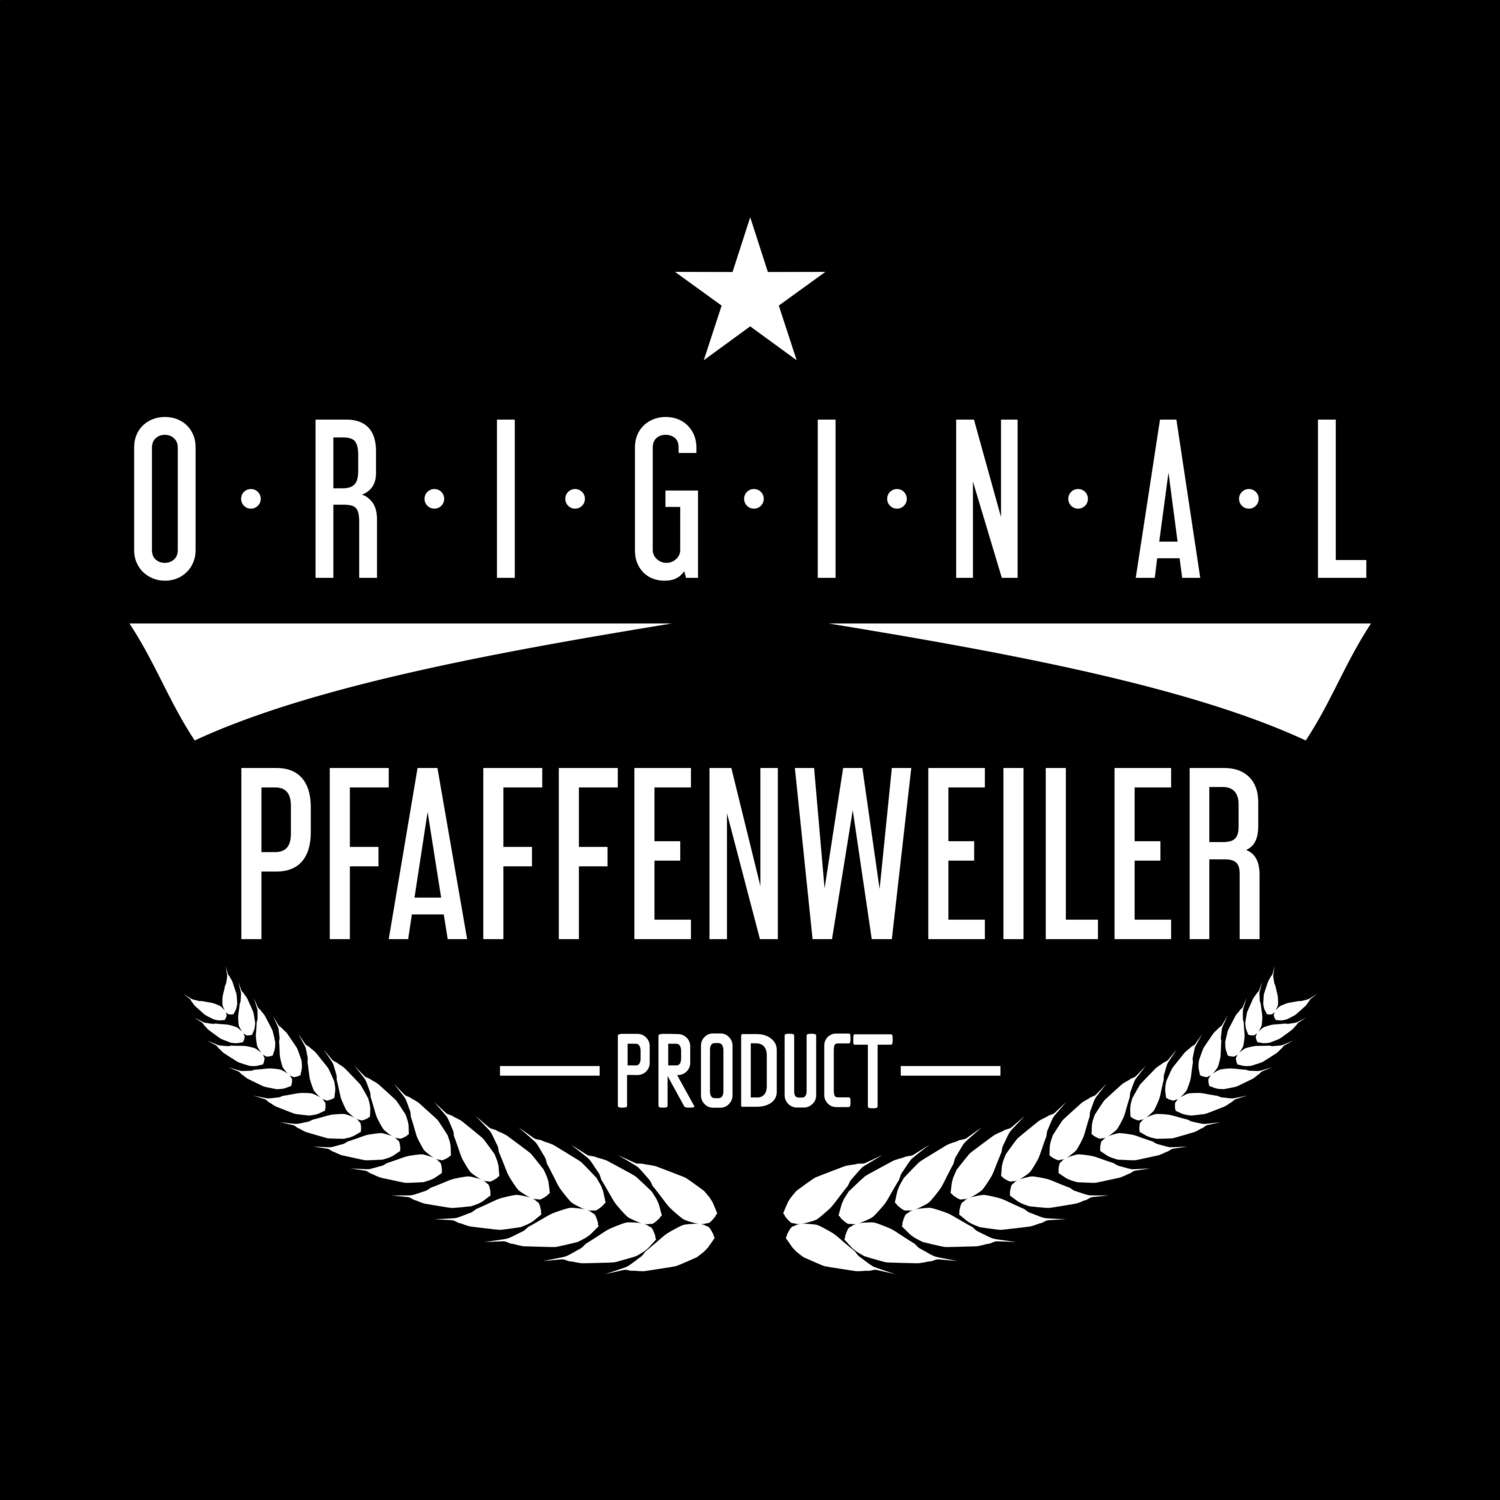 Pfaffenweiler T-Shirt »Original Product«